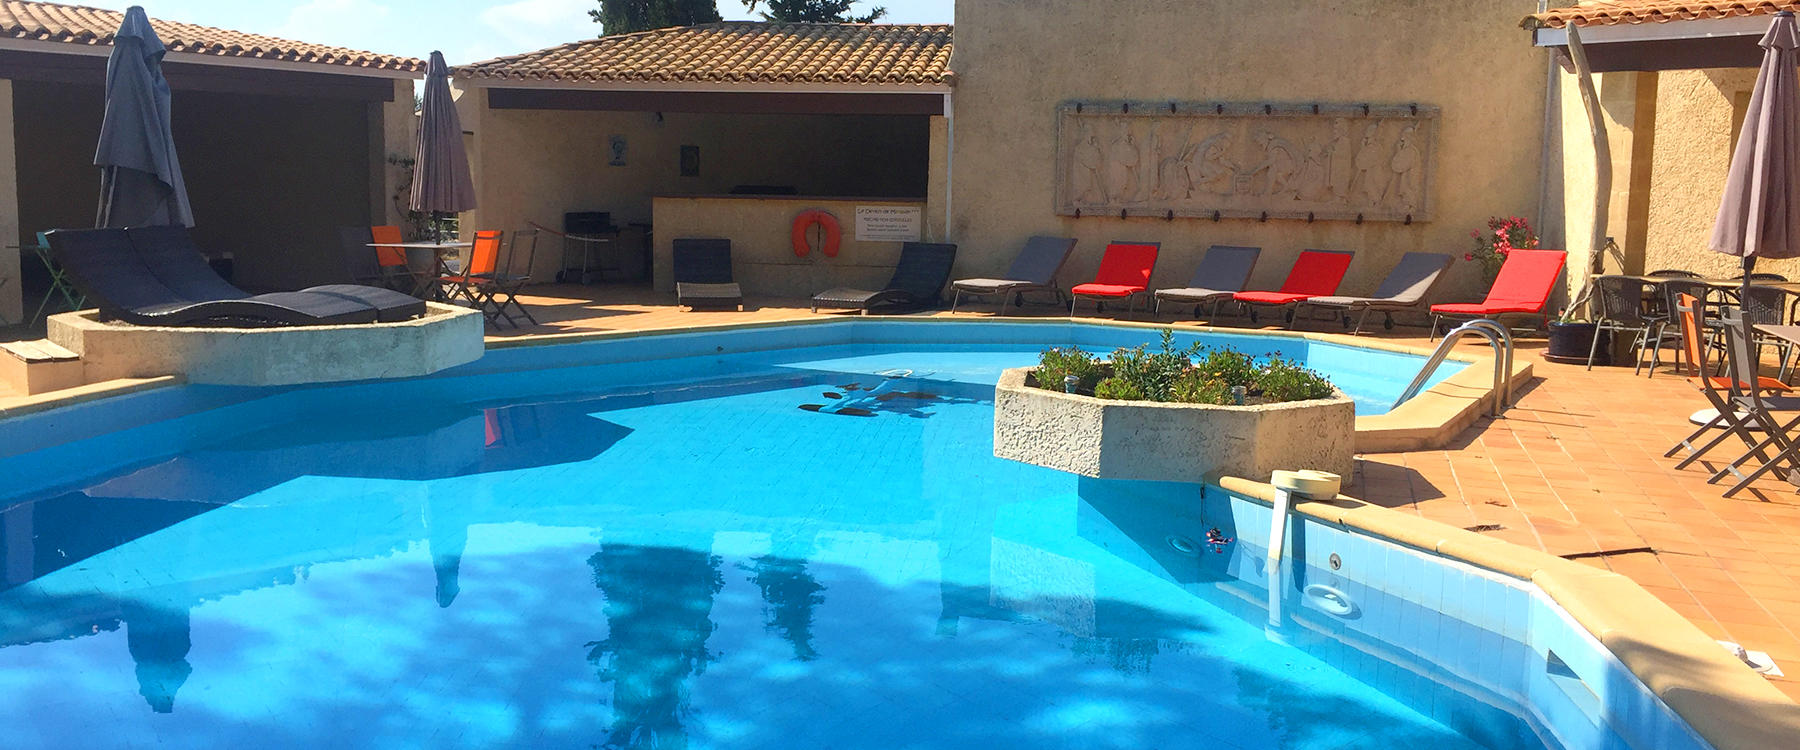 La piscine de l'hôtel 3 étoiles Le Devem de Mirapier, près de Salon de Provence